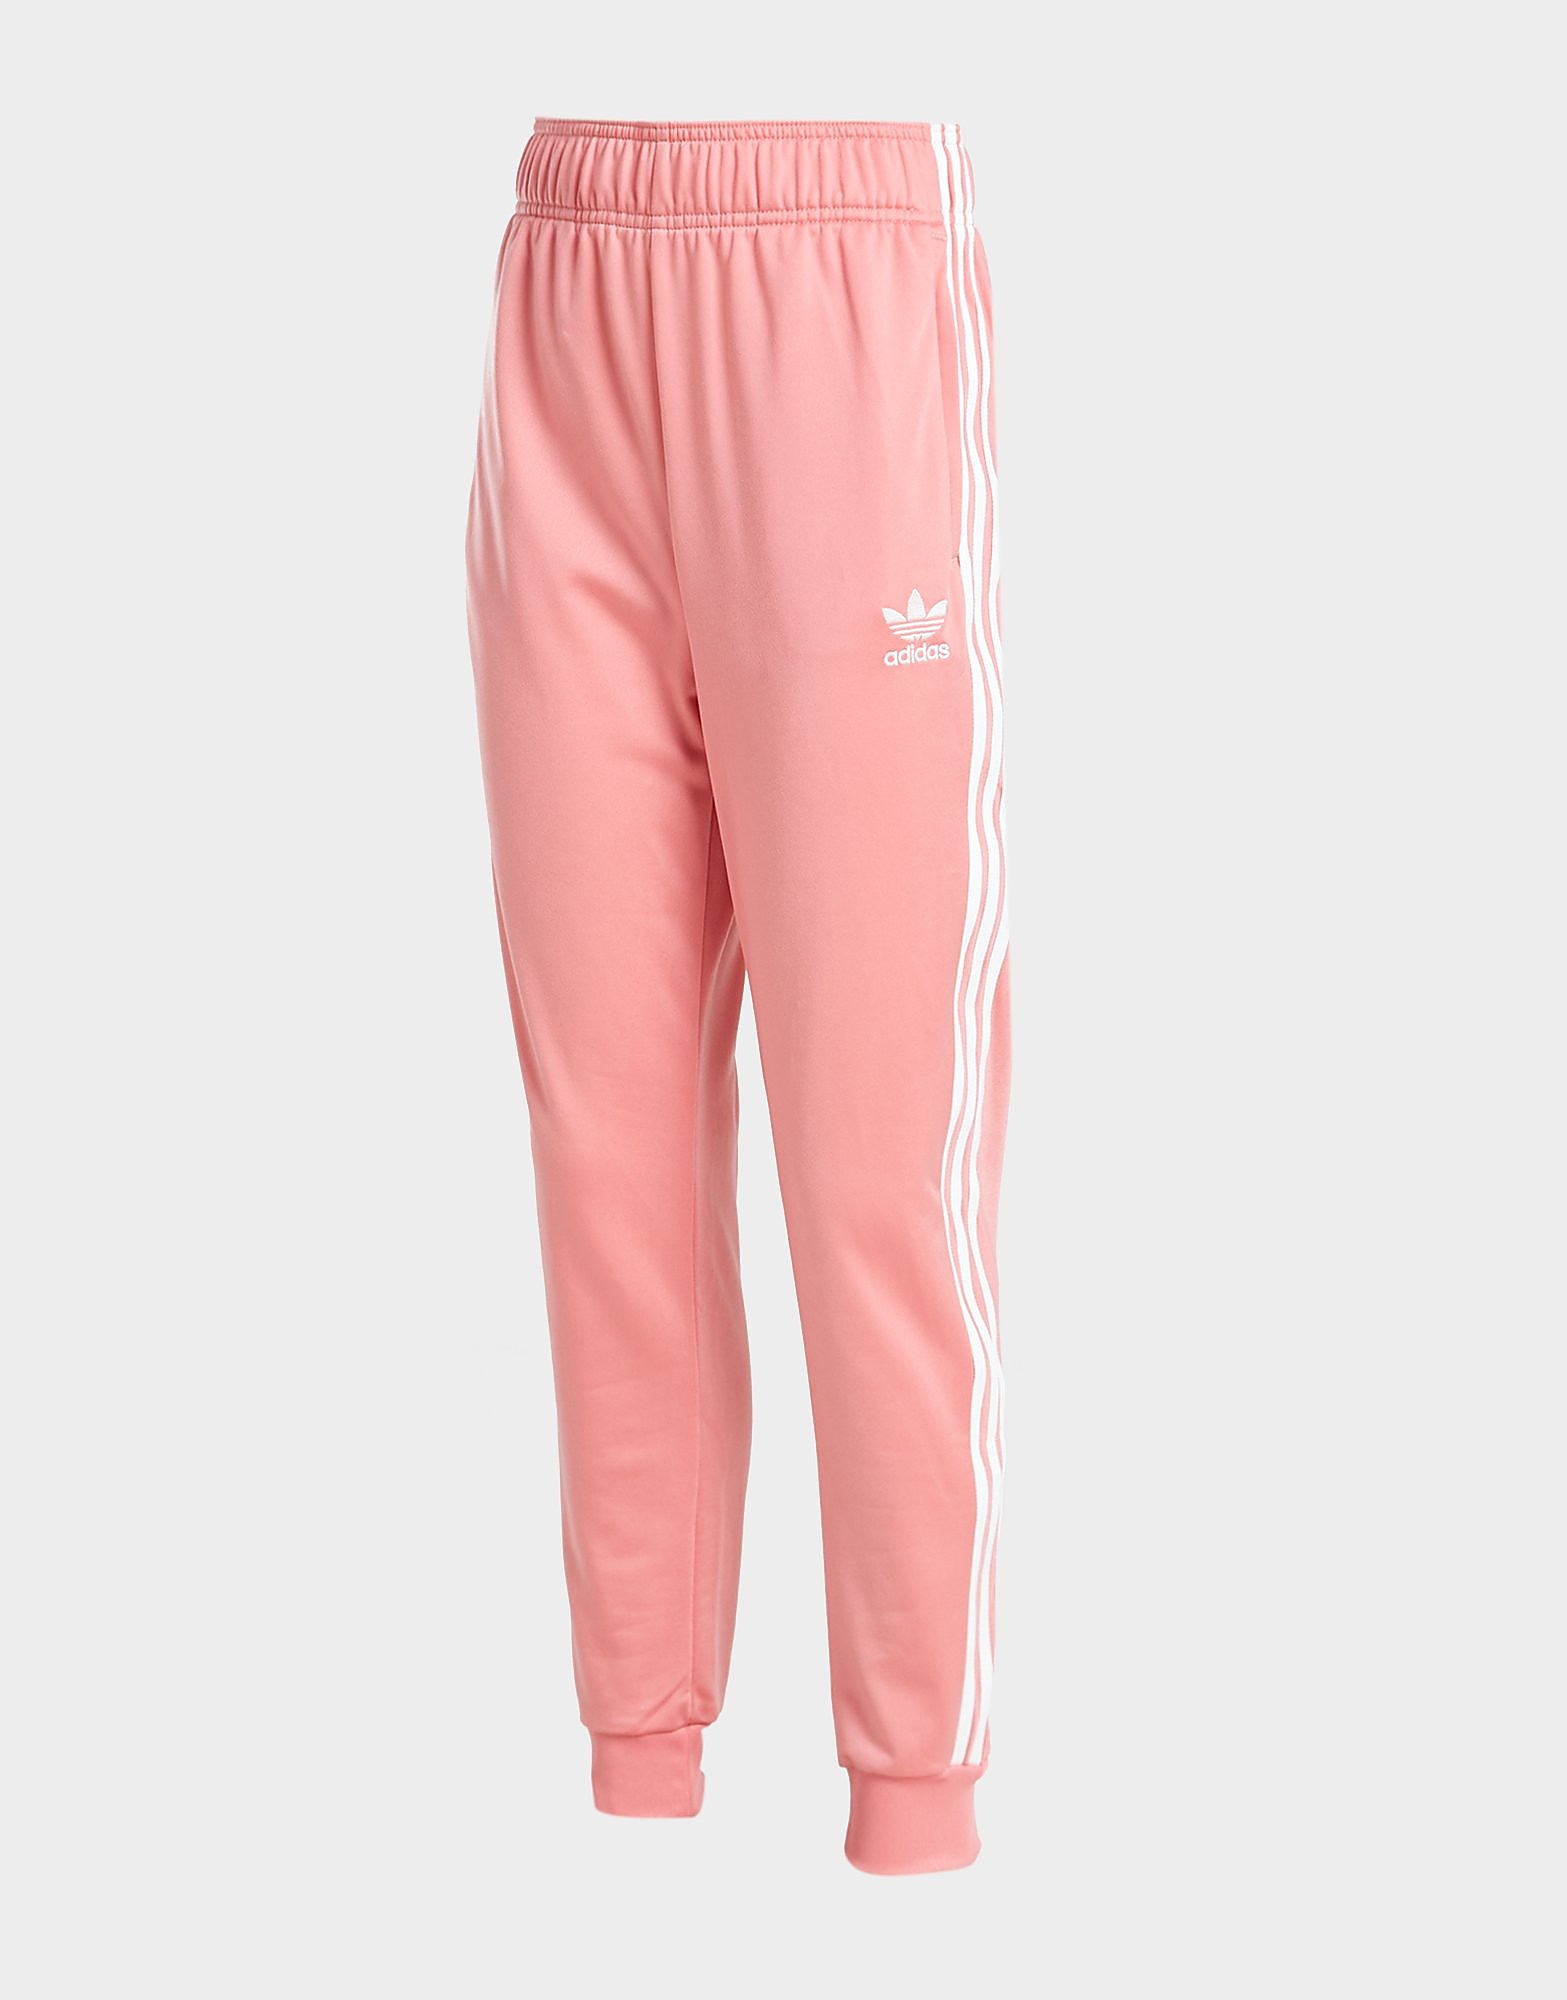 Adidas originals girls' 3-stripes ss track pants junior - kids, vaaleanpunainen, adidas originals